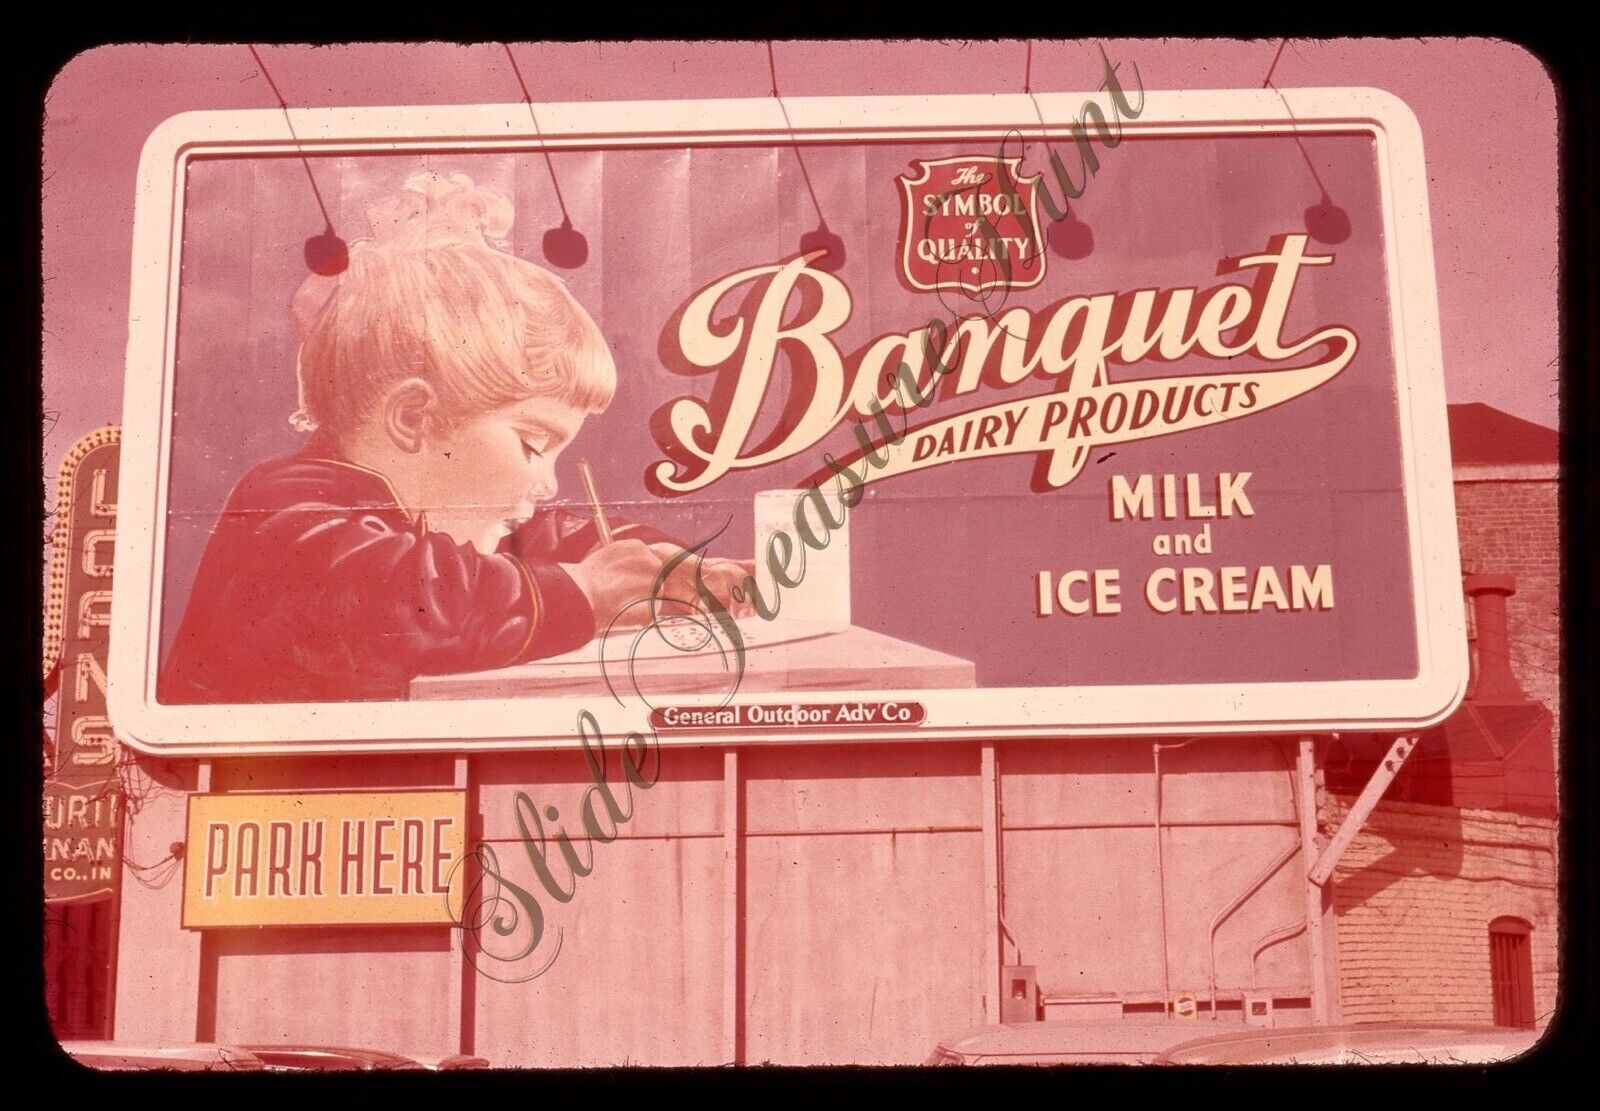 Banquet Dairy Products Milk Ice Cream Billboard Sign 1950s 35mm Slide